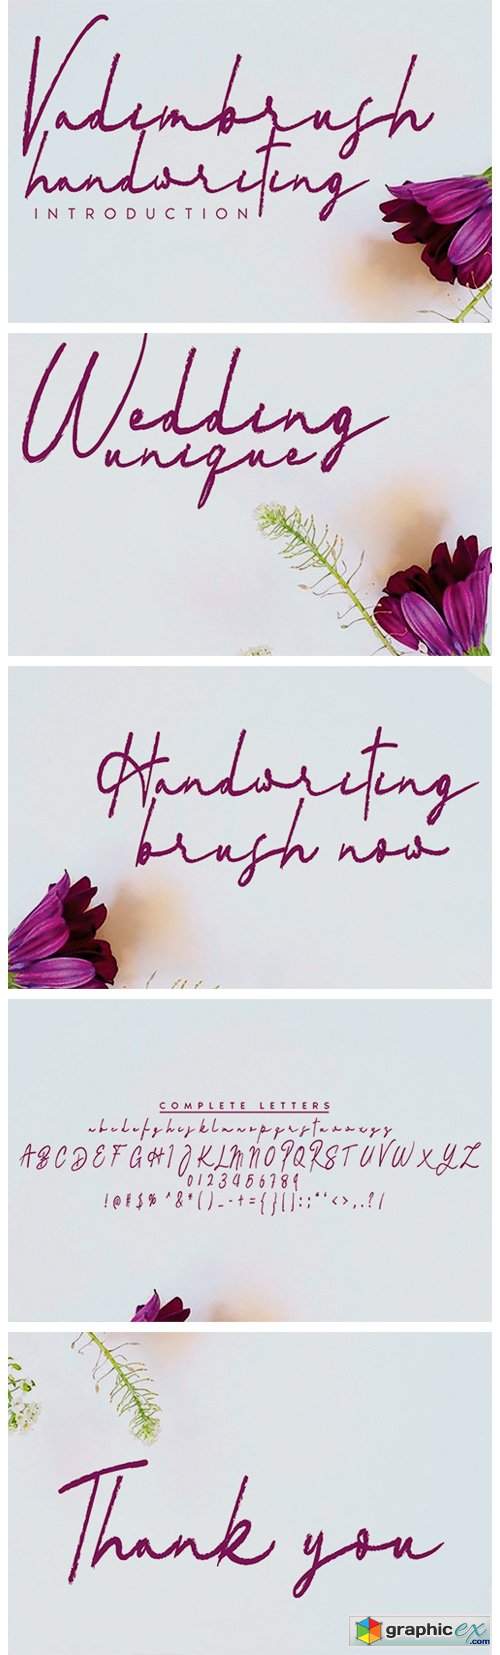  Vadimbrush Handwriting Font 